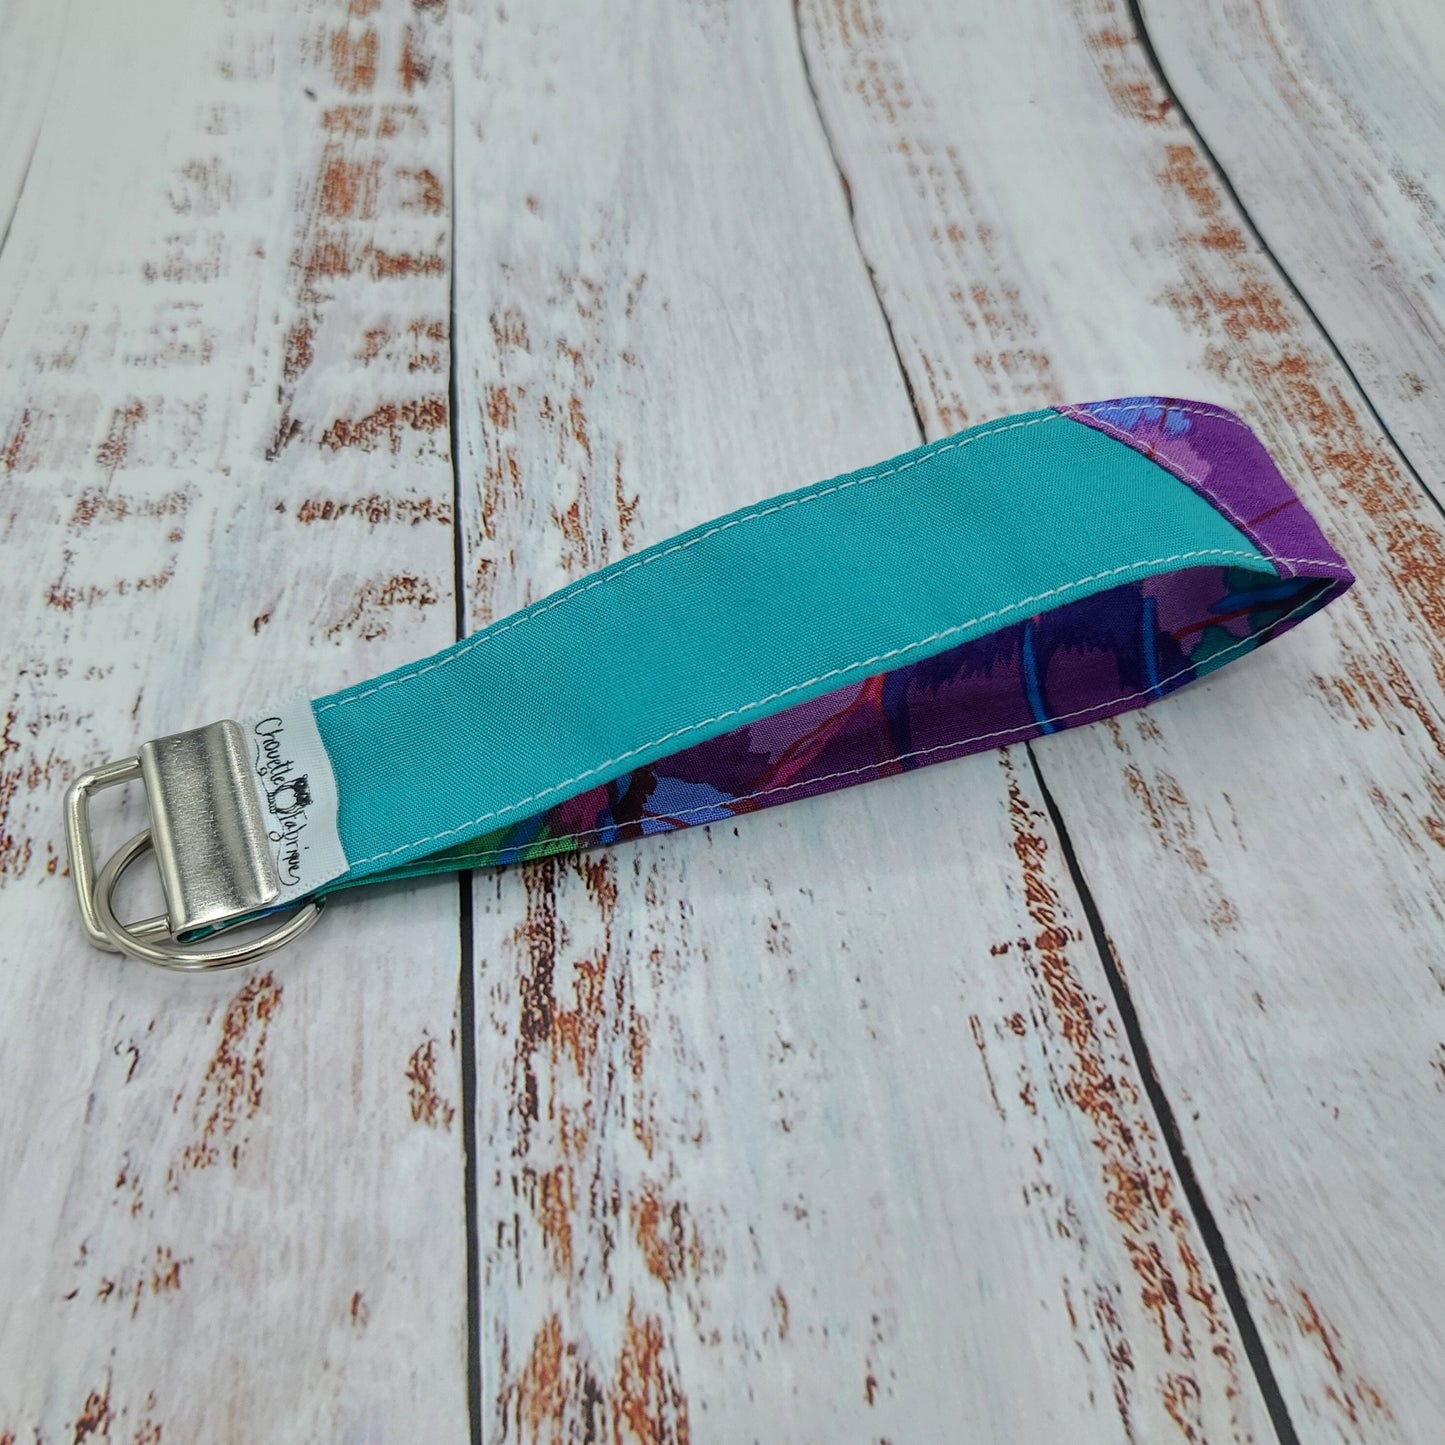 Porte-clé - PERSONNALISÉ - Dragonne - Poignet - Fleurs Lilas/Violet - Bande turquoise